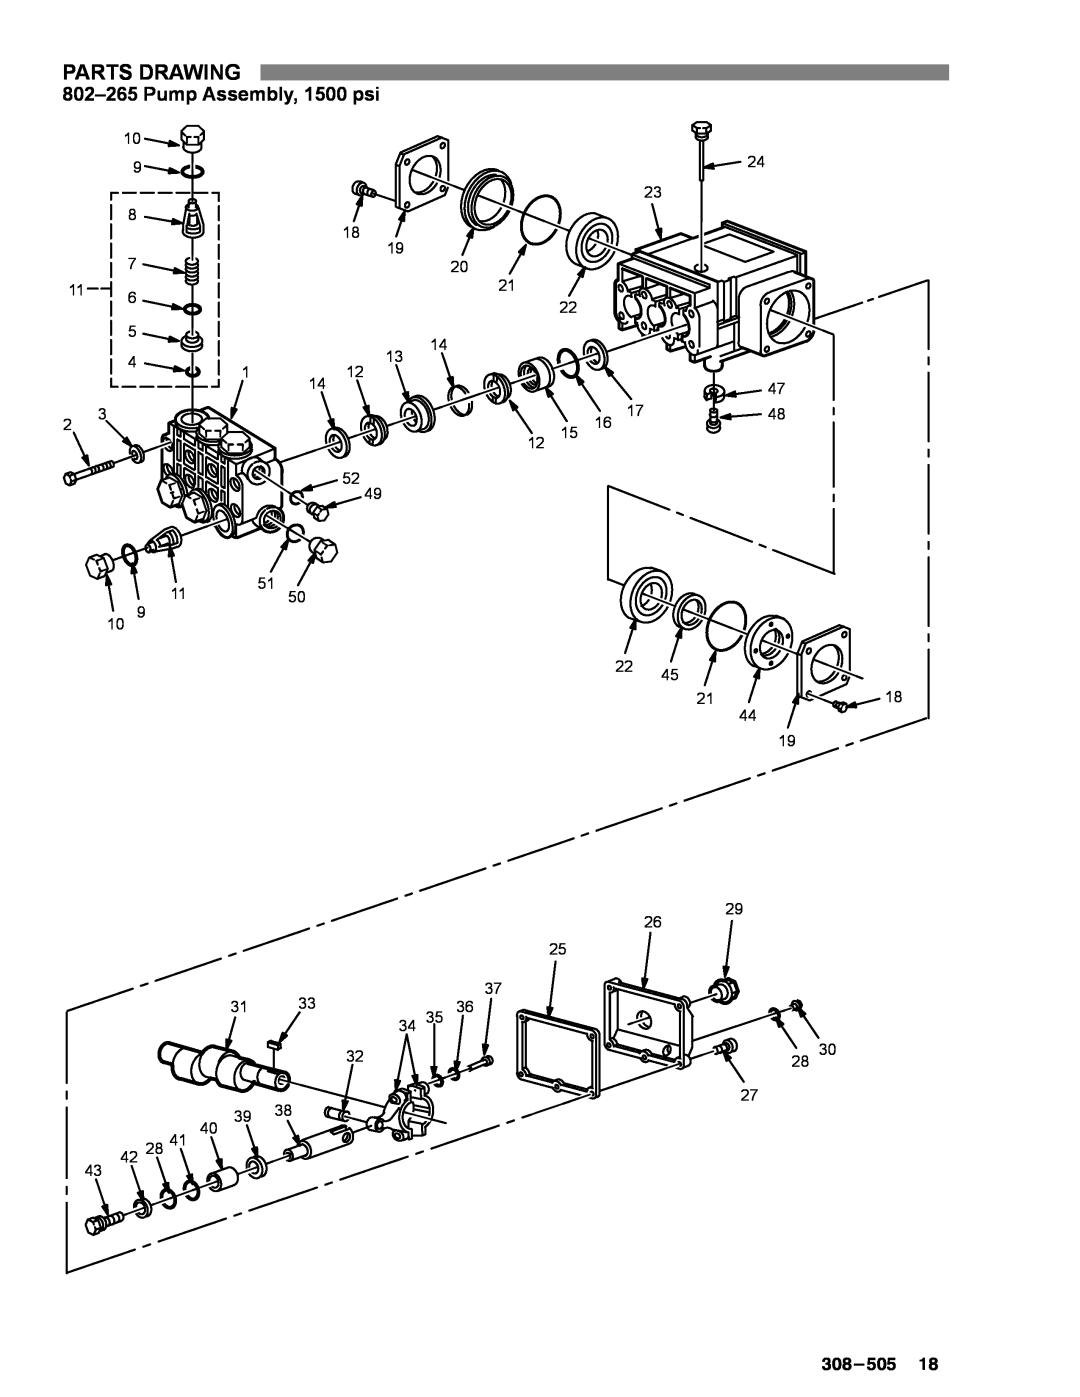 Graco Inc 800-367, 800-164, 800-290, 308-505, 800-165, 2040, 1535 manual Pump Assembly, 1500 psi, Parts Drawing 